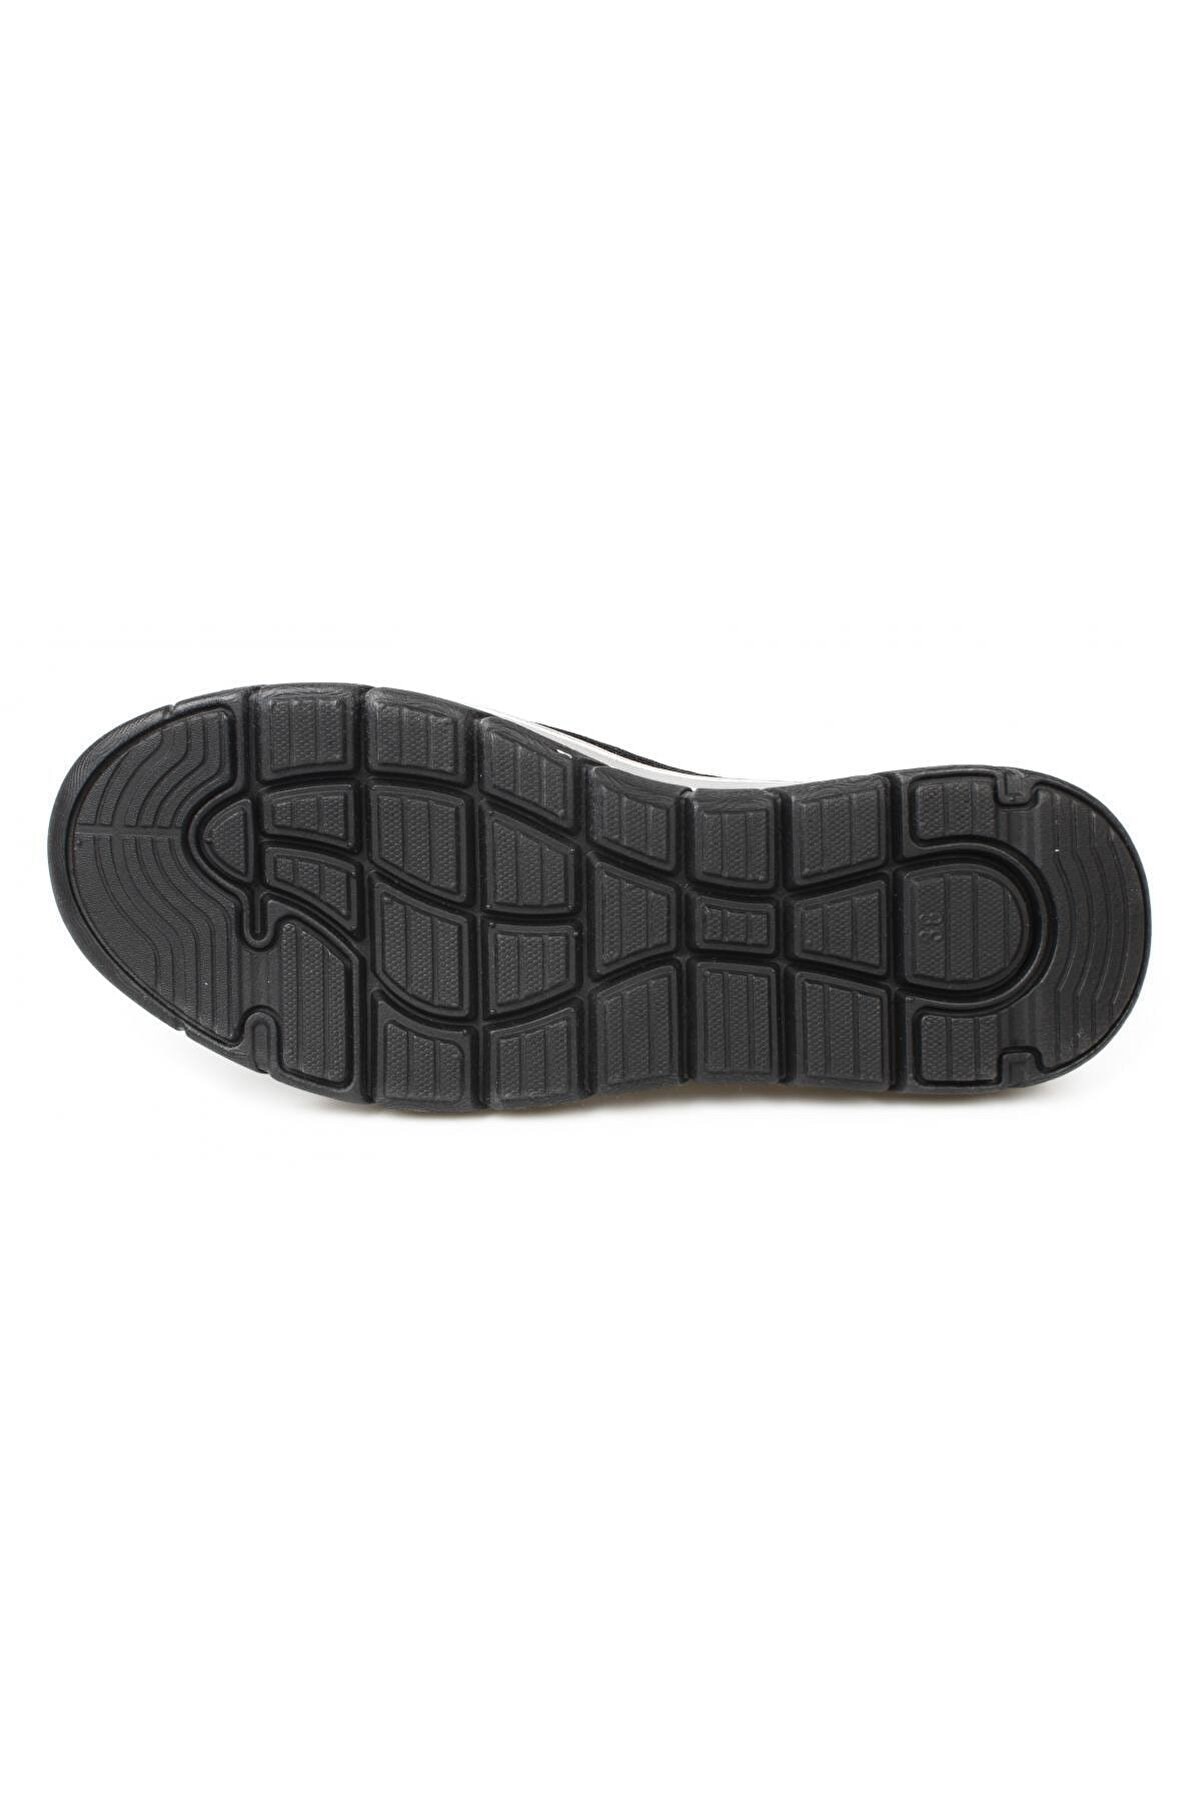 Mammamia Kadın Ayakkabı D21KA-550 1296 Siyah